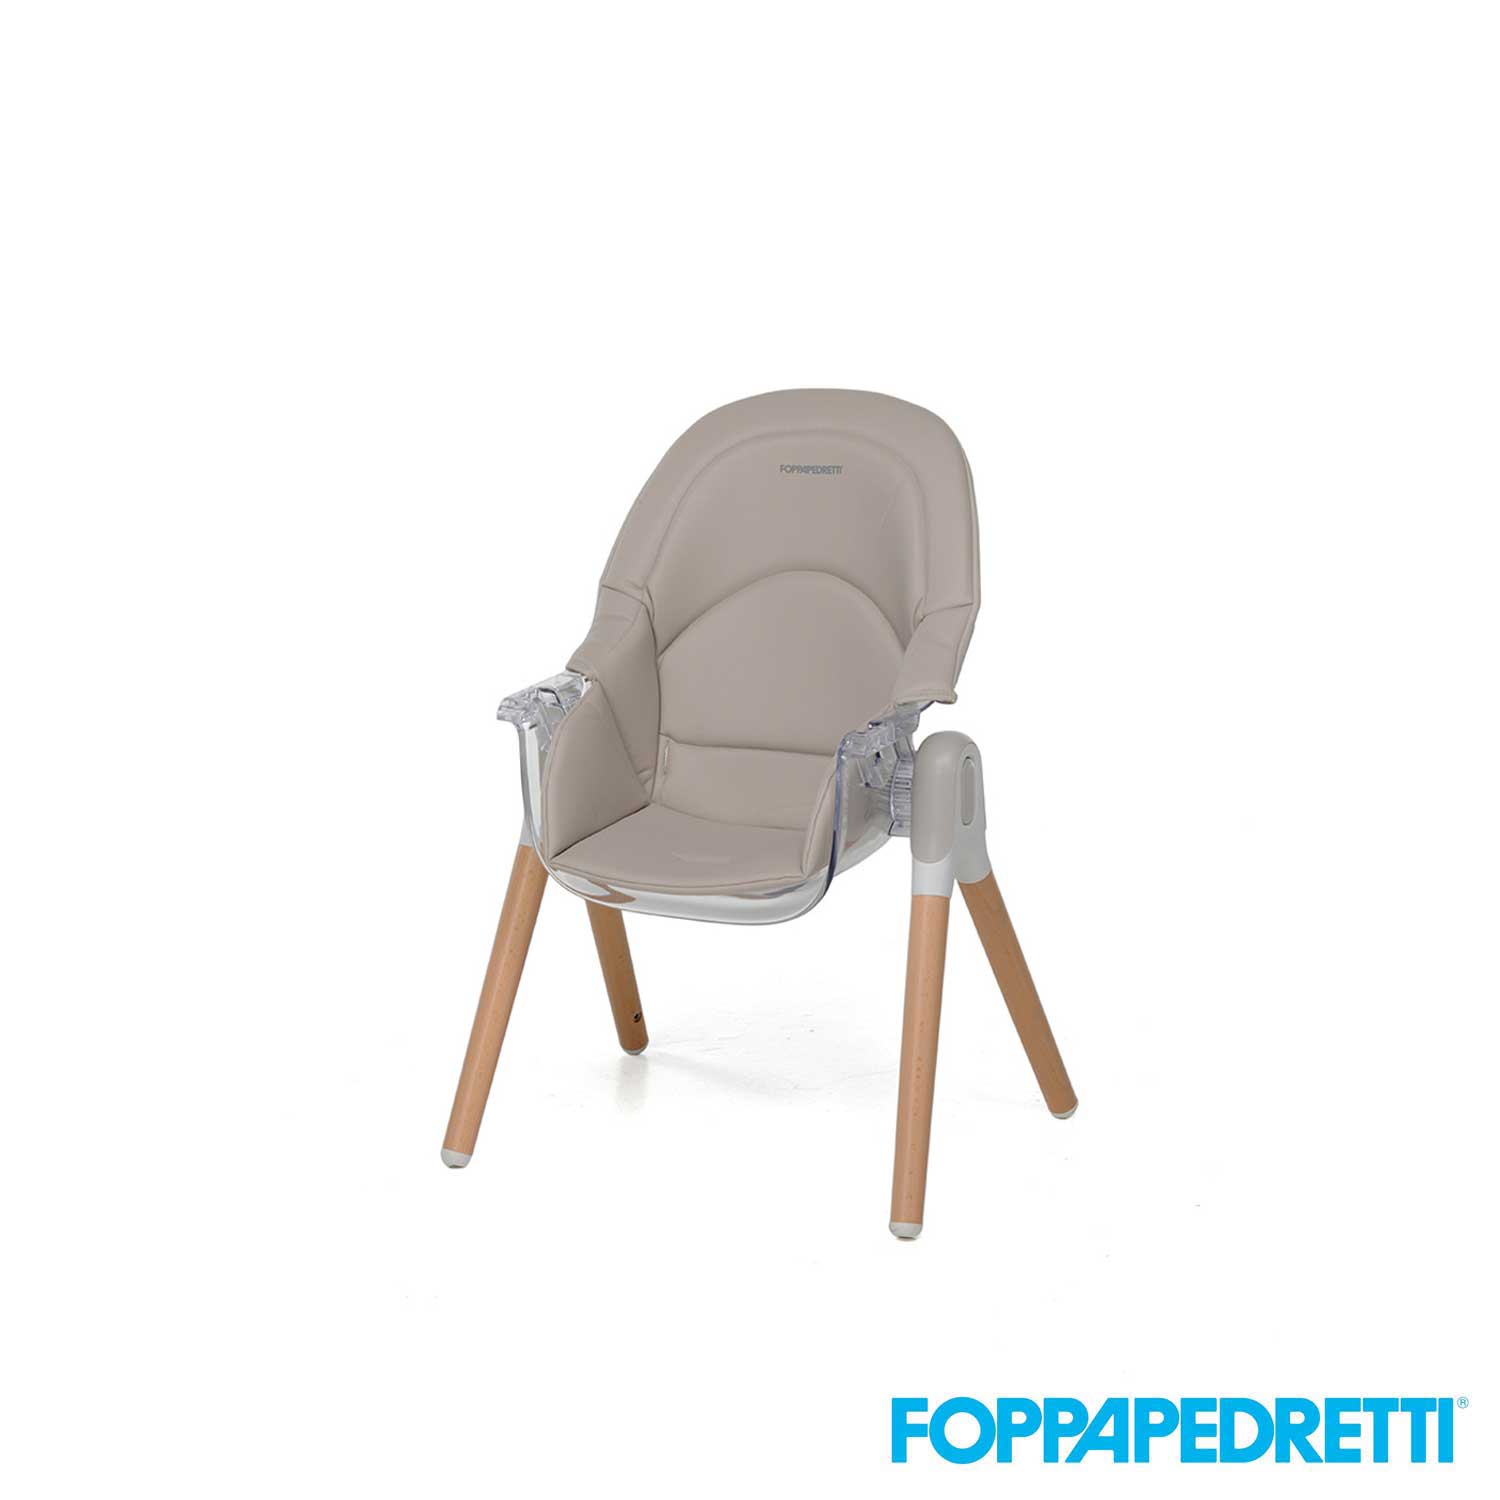 Foppapedretti - Seggiolone 2 in 1 Bonito – Iperbimbo